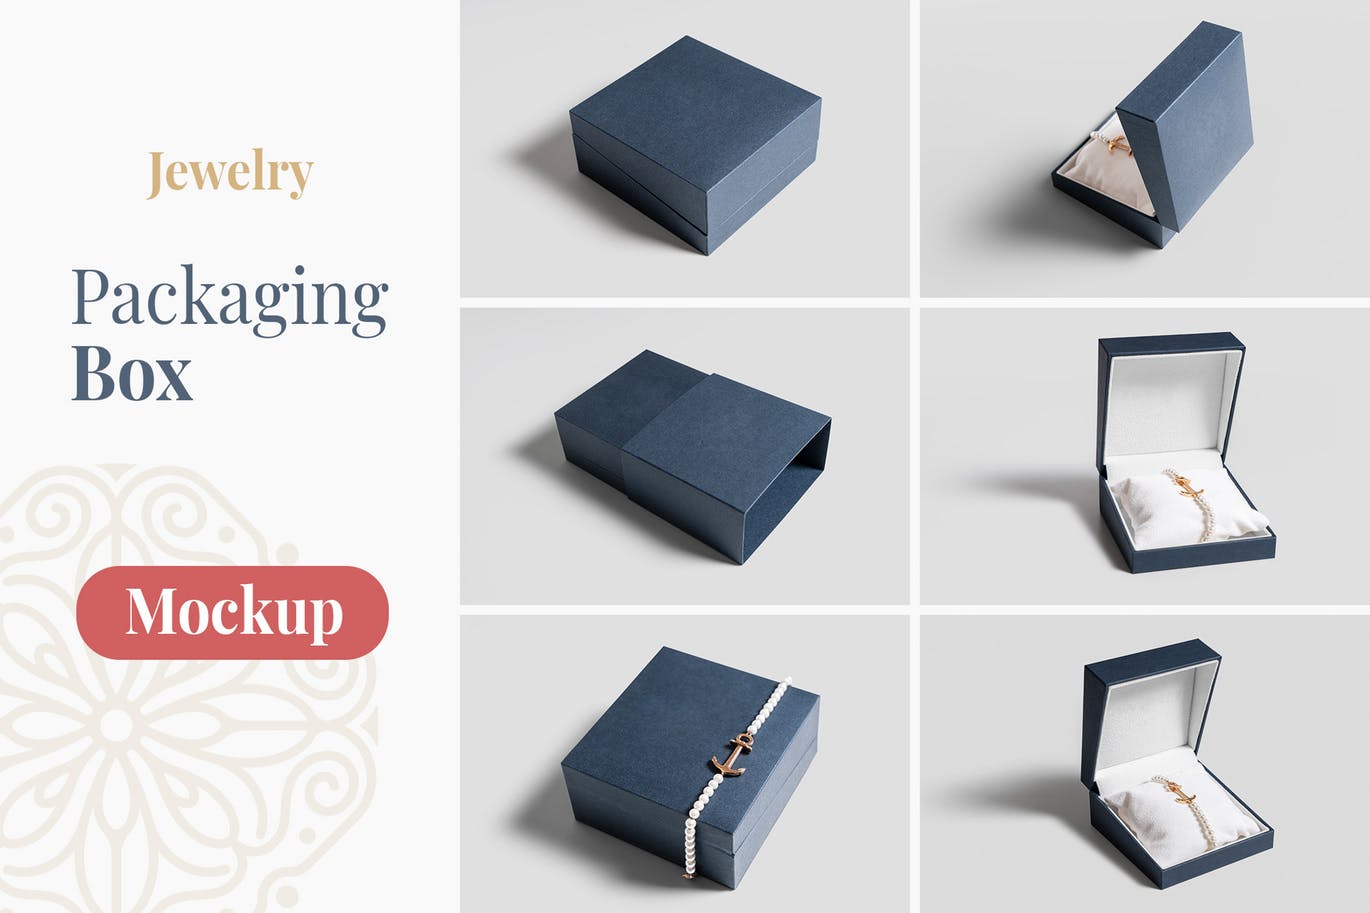 珠宝包装盒设计图素材中国精选模板 Jewelry Packaging Box Mockups插图(1)